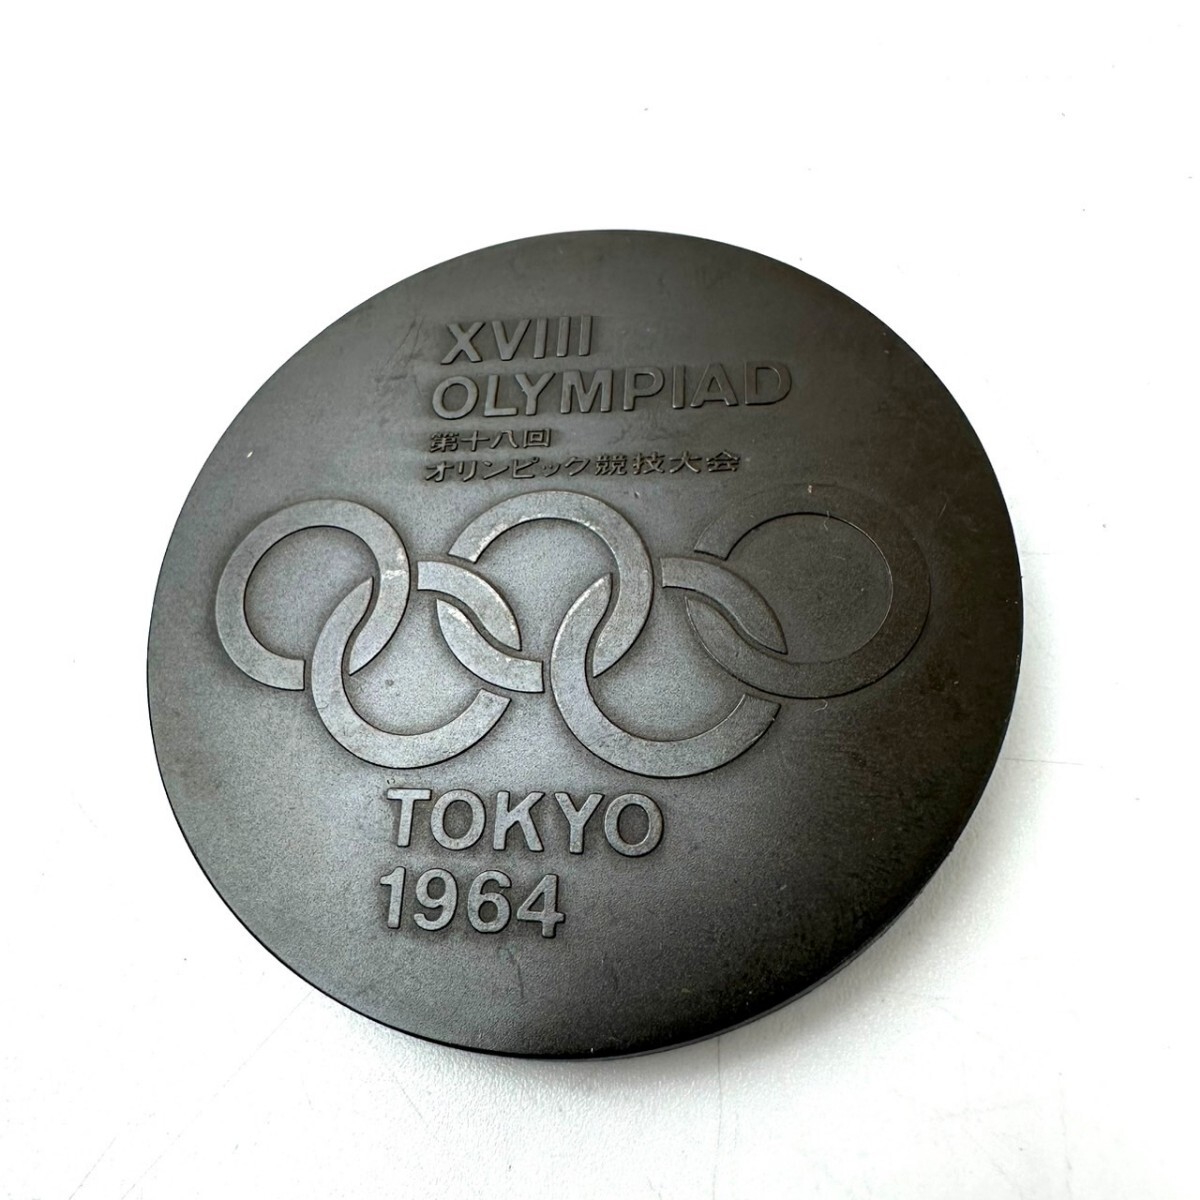 KA*1 иен ~ ④ хранение товар память медаль 1964 год Tokyo Olympic Okamoto Taro Tokyo собрание национальный флаг .. сотрудничество память медаль bronze без коробки . суммировать 10 шт. комплект 